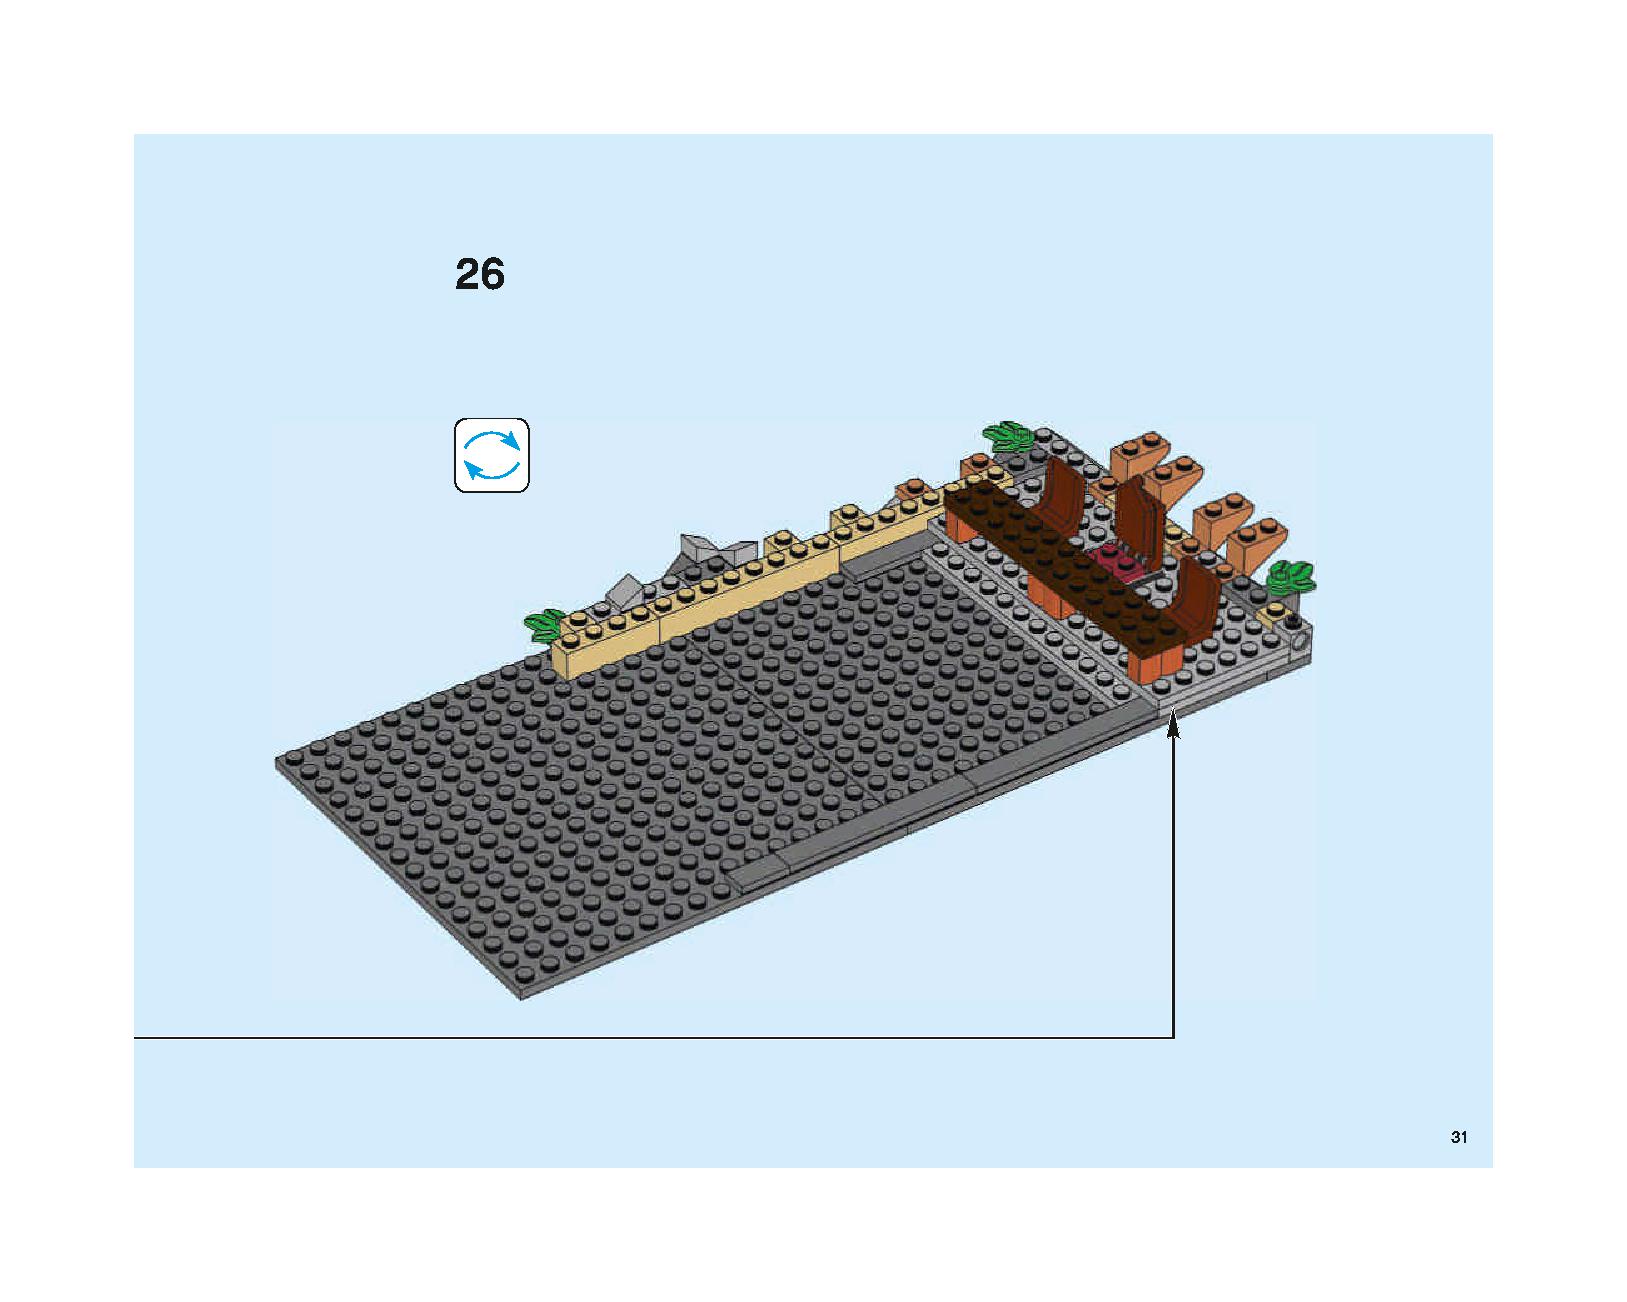 ホグワーツの大広間 75954 レゴの商品情報 レゴの説明書・組立方法 31 page